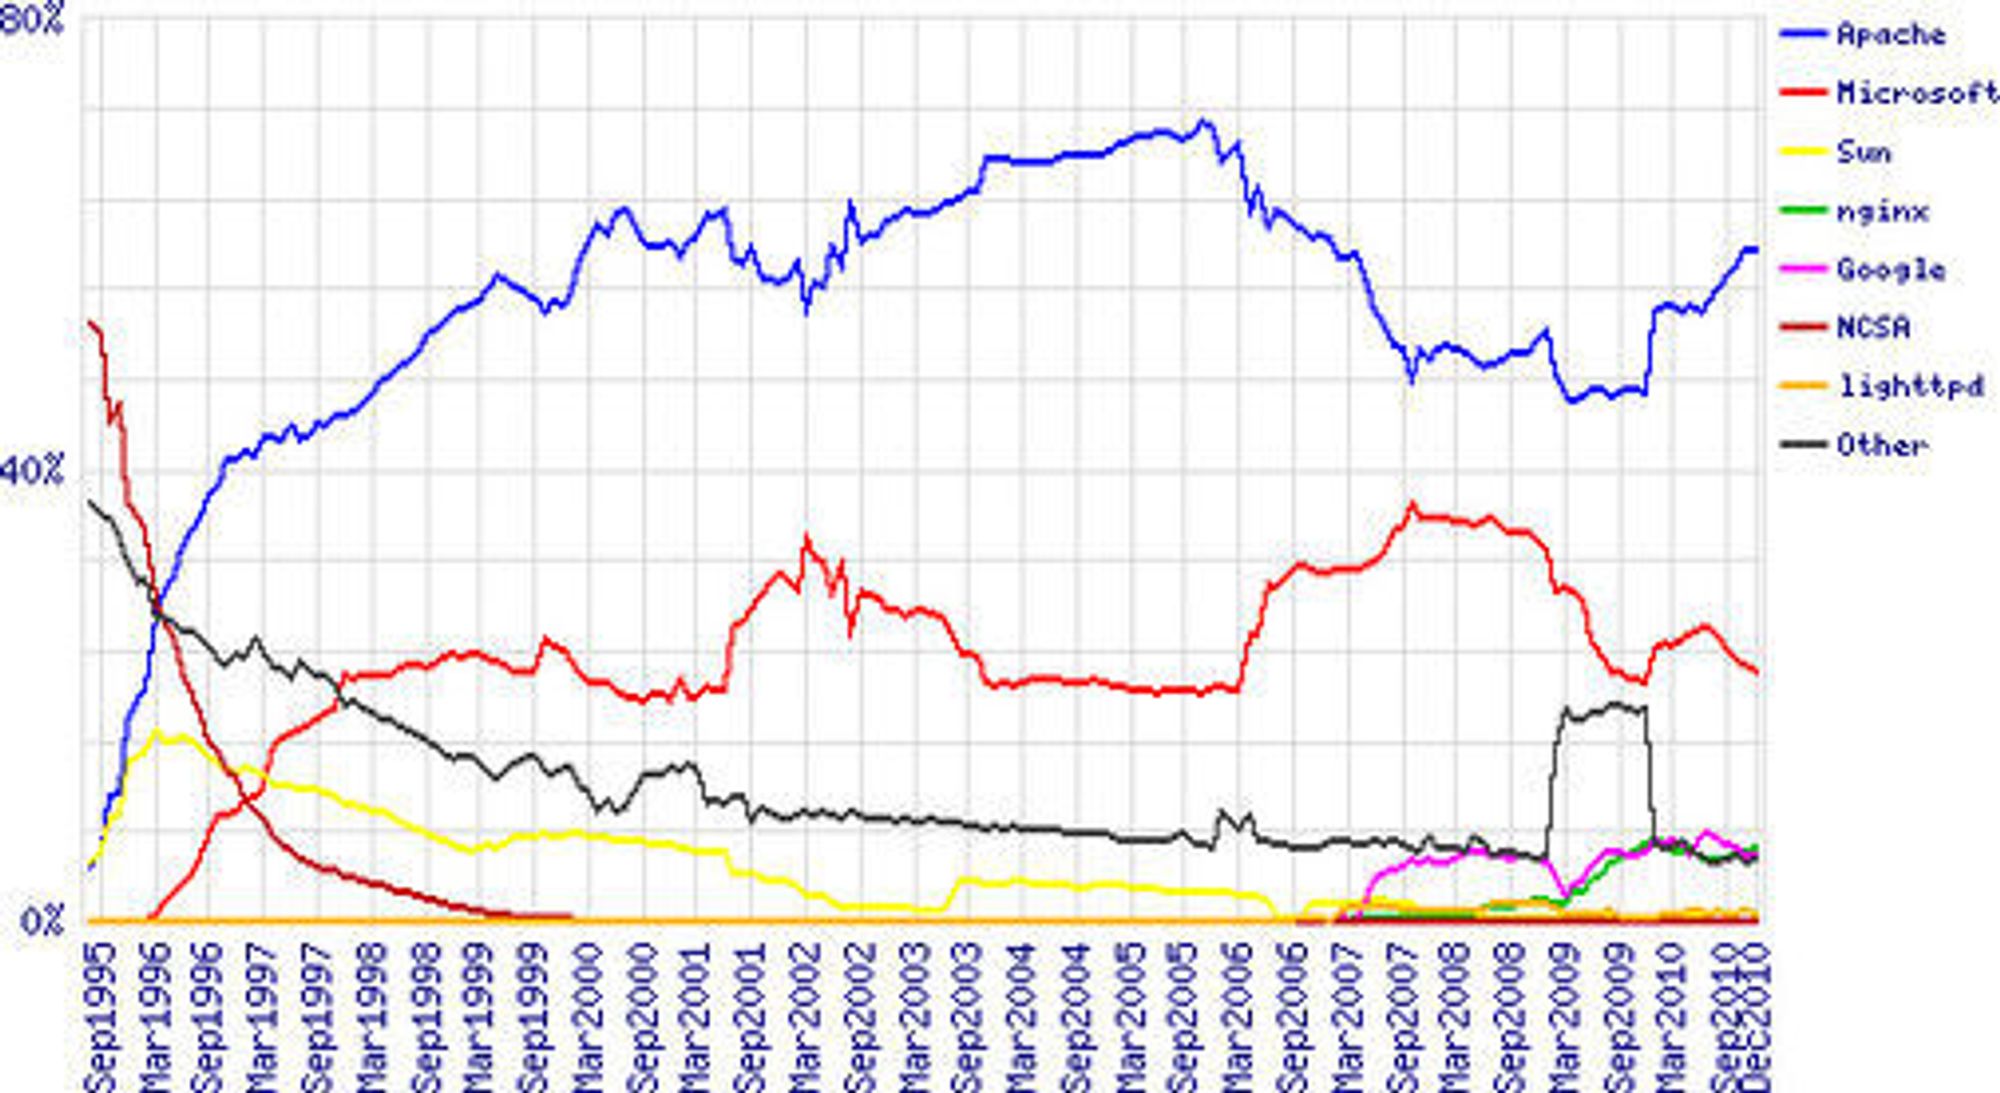 Markedsandelen til ulike webserverer i perioden august 1995 til desember 2010